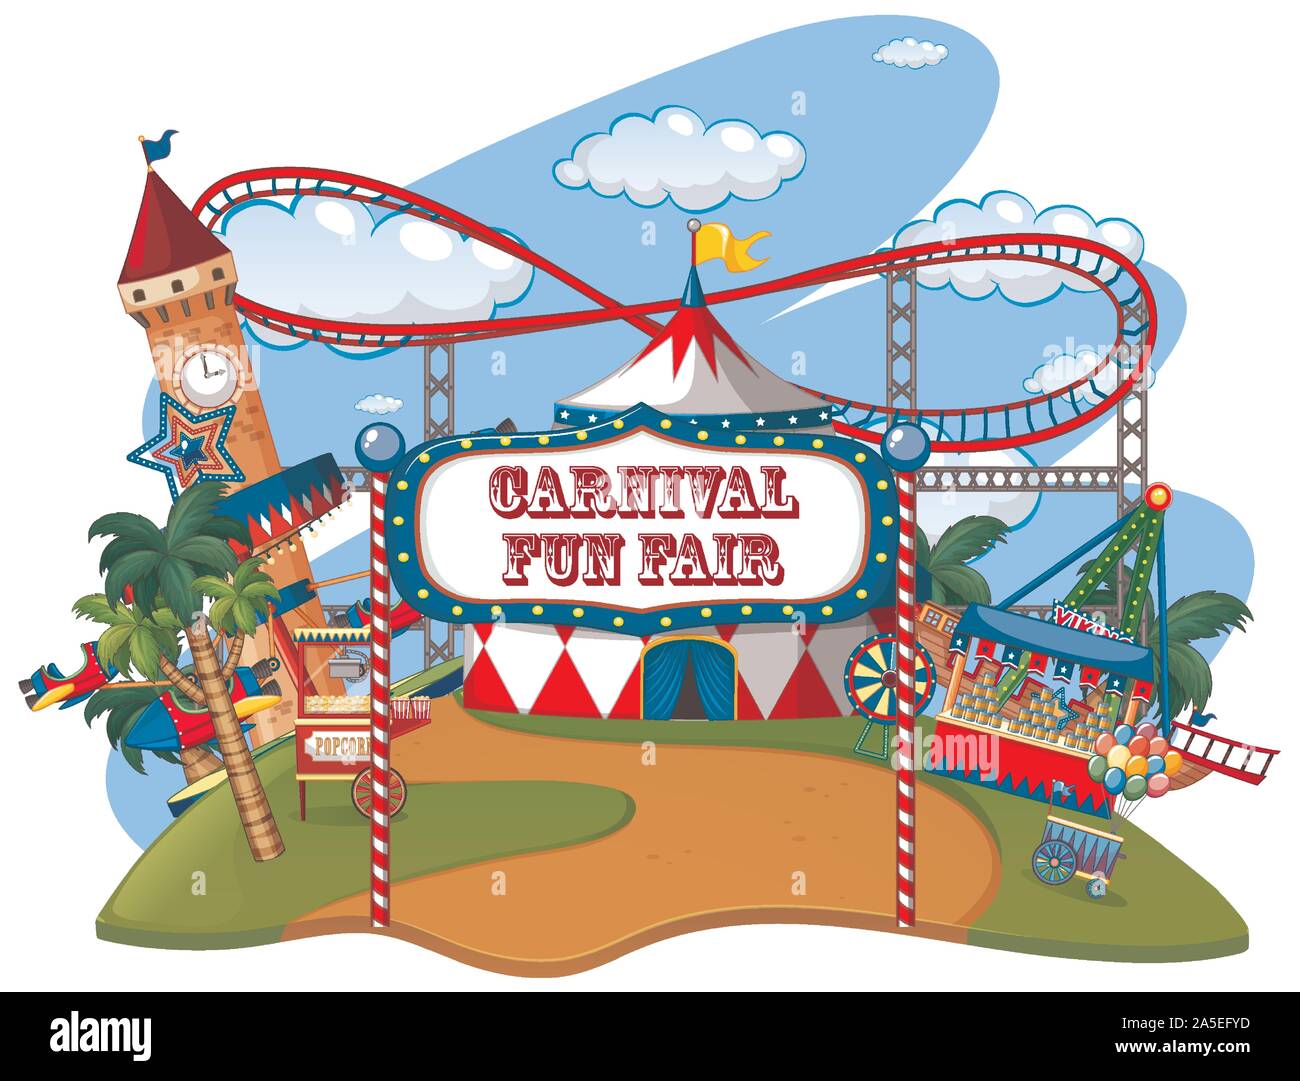 Fun fair park